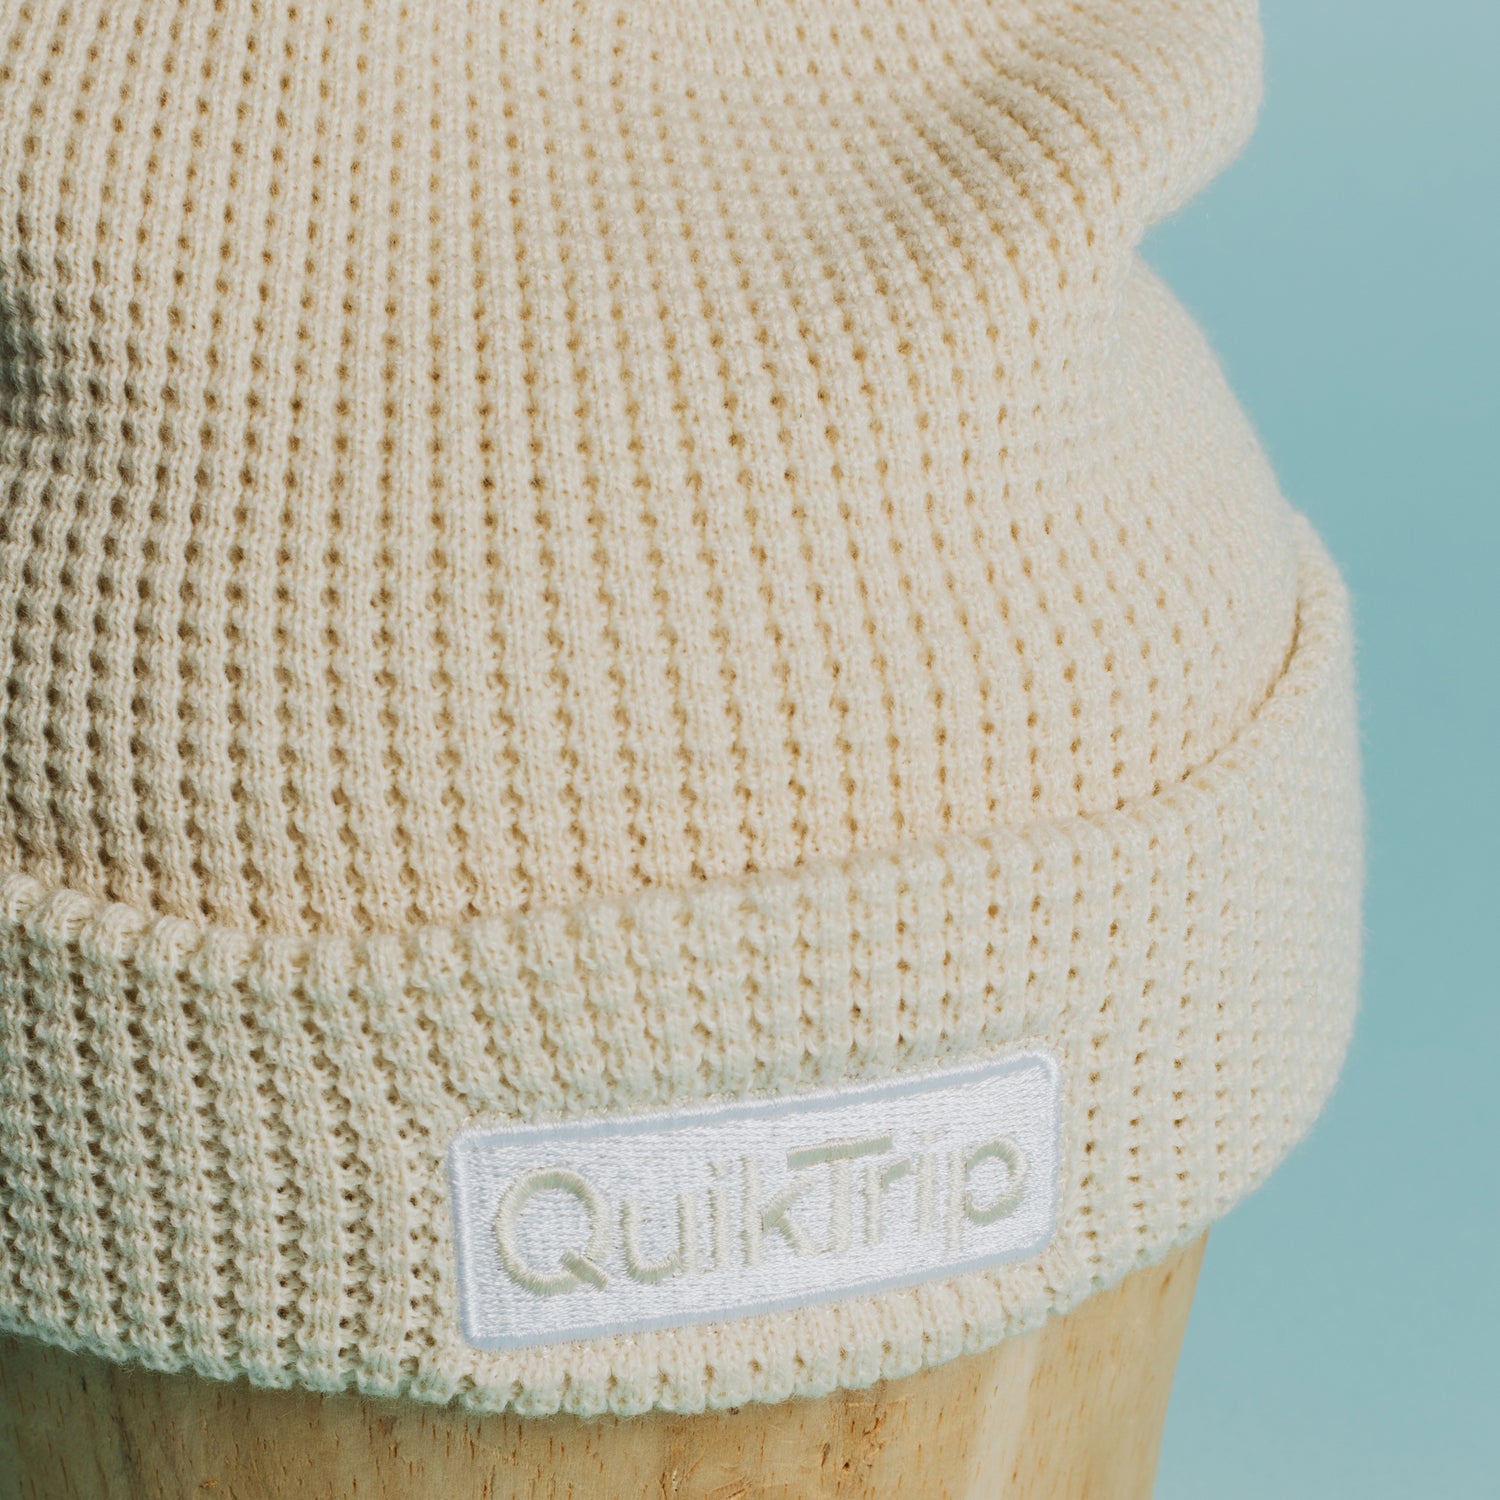 QuikTrip Waffle Knit Beanie